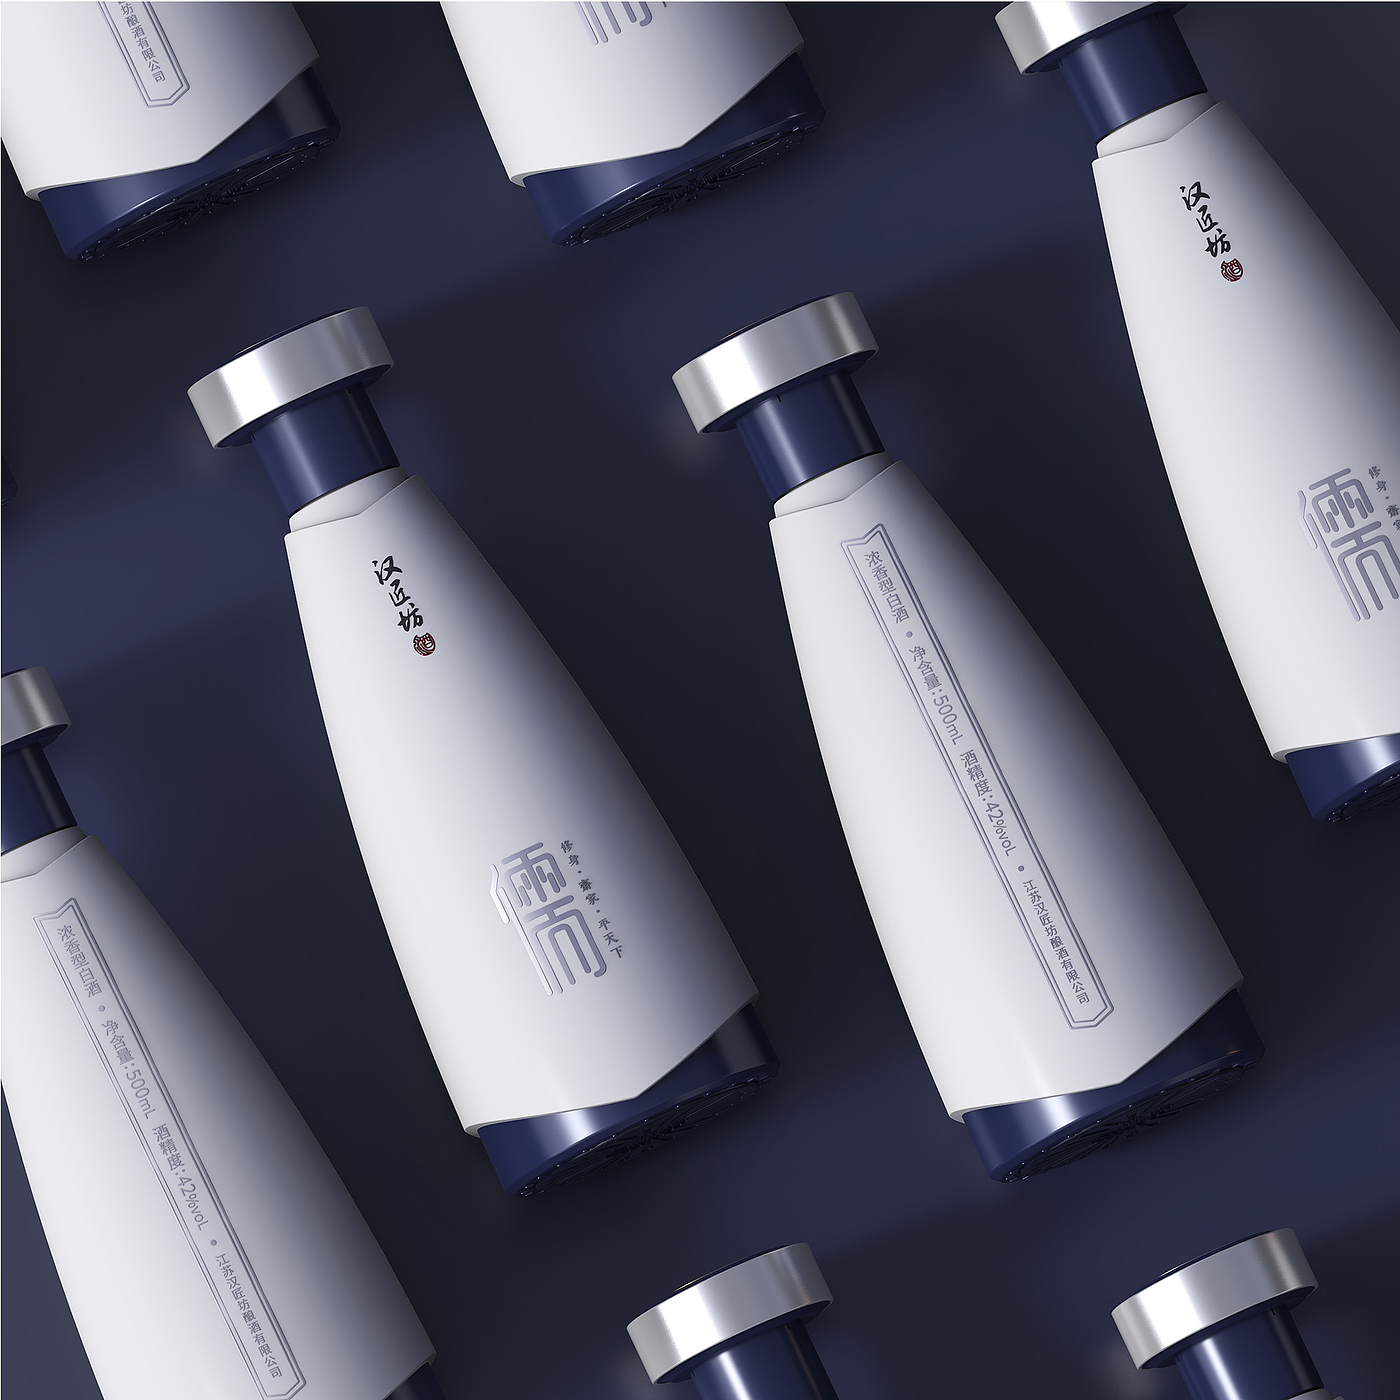 包装设计，2020 CGD当代好设计奖，江苏汉匠坊酿酒有限公司，上海木马工业产品设计有限公司，